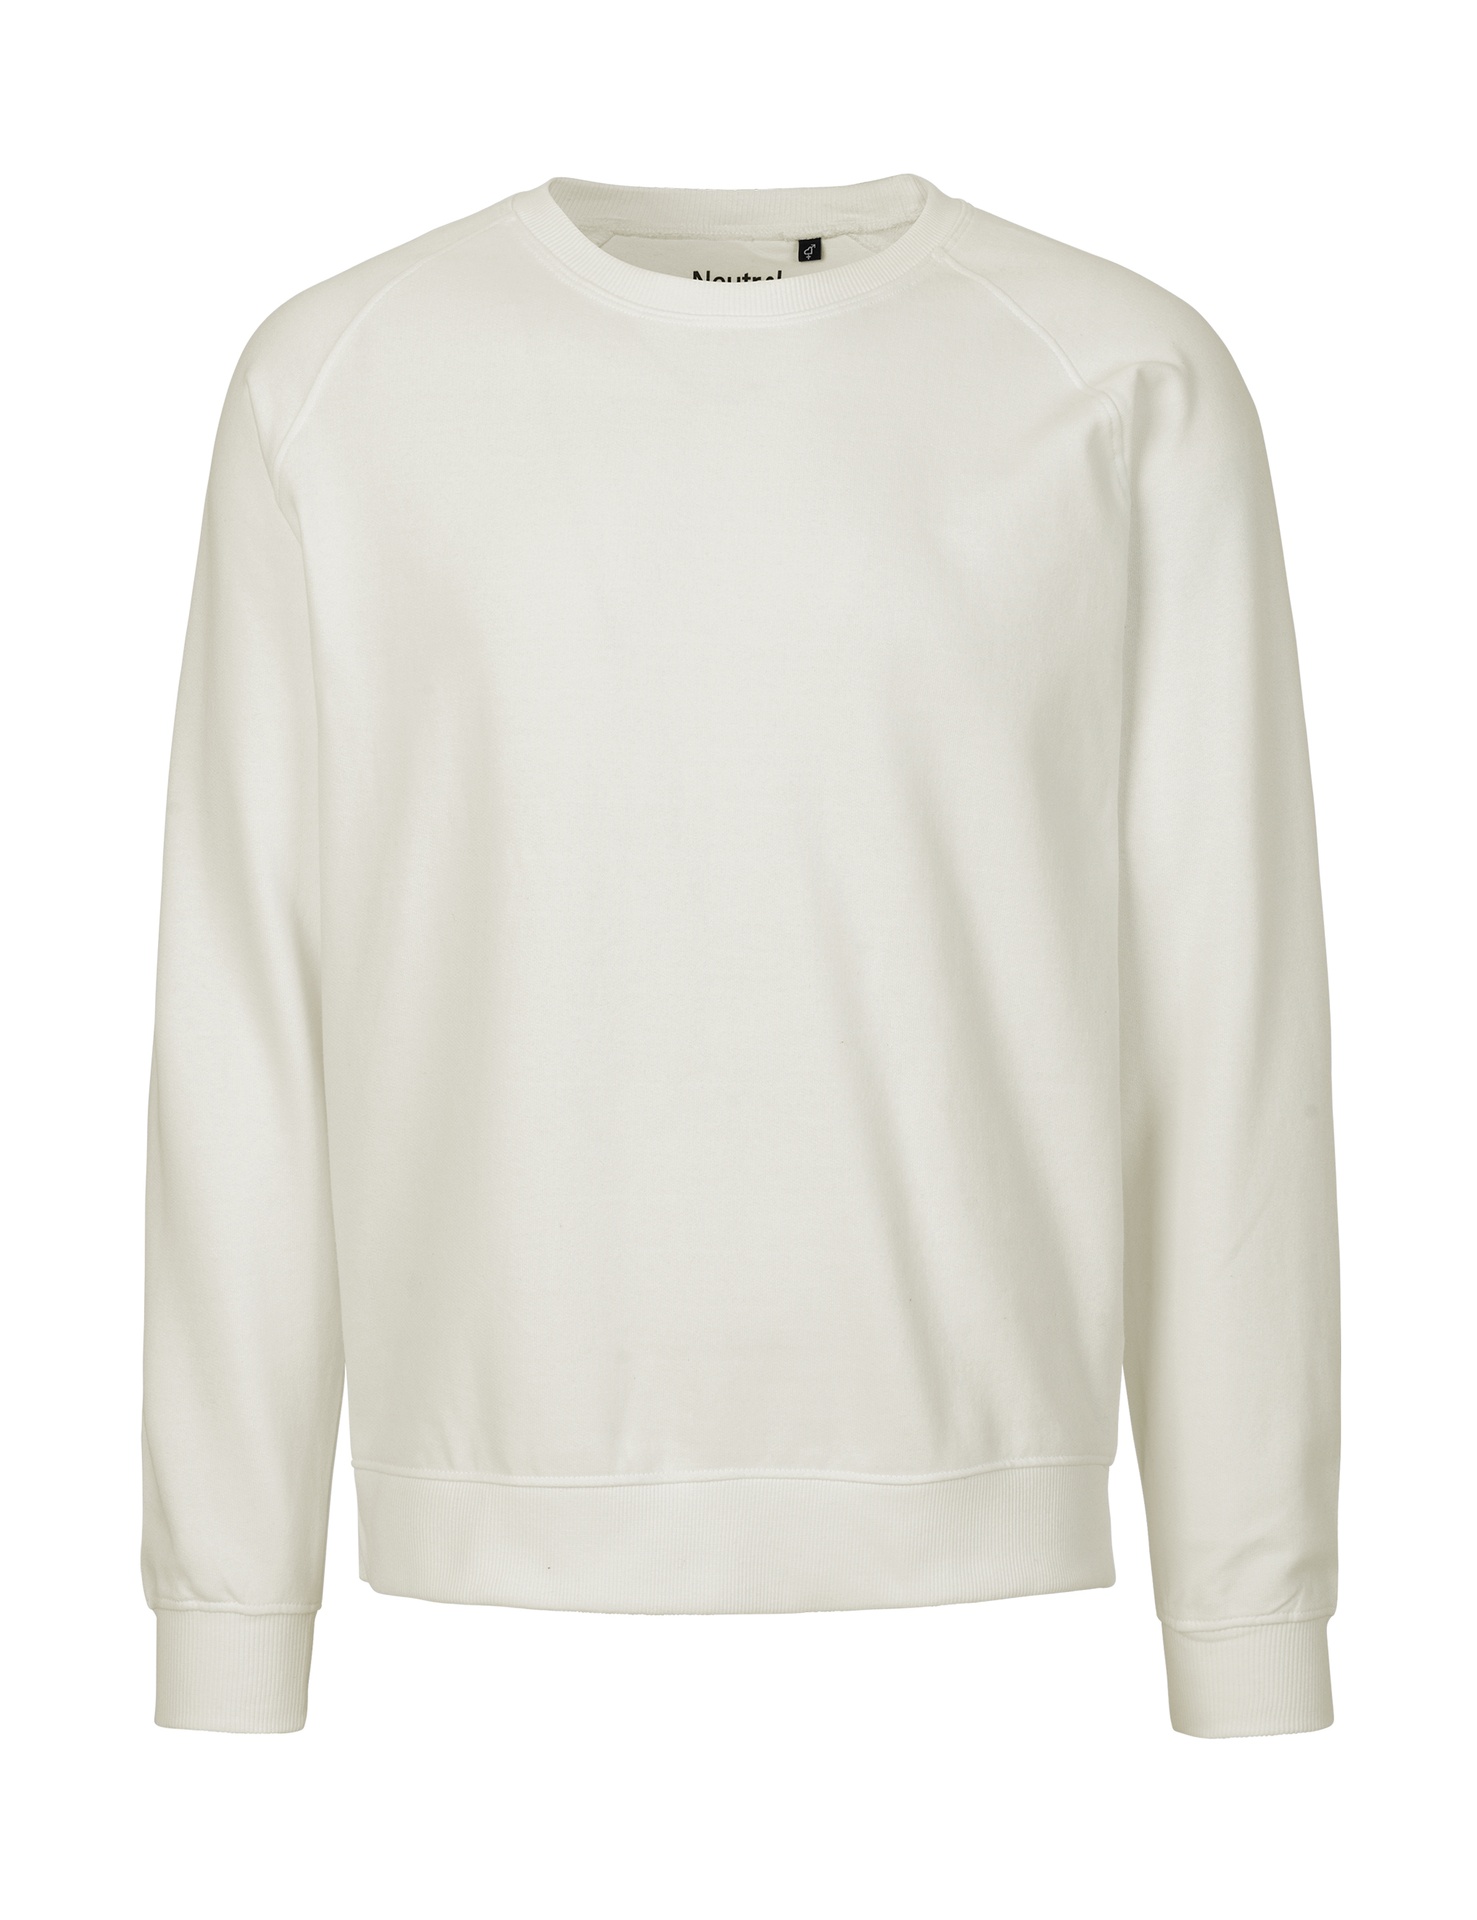 [PR/02650] Unisex Sweatshirt (Nature 00, 4XL)